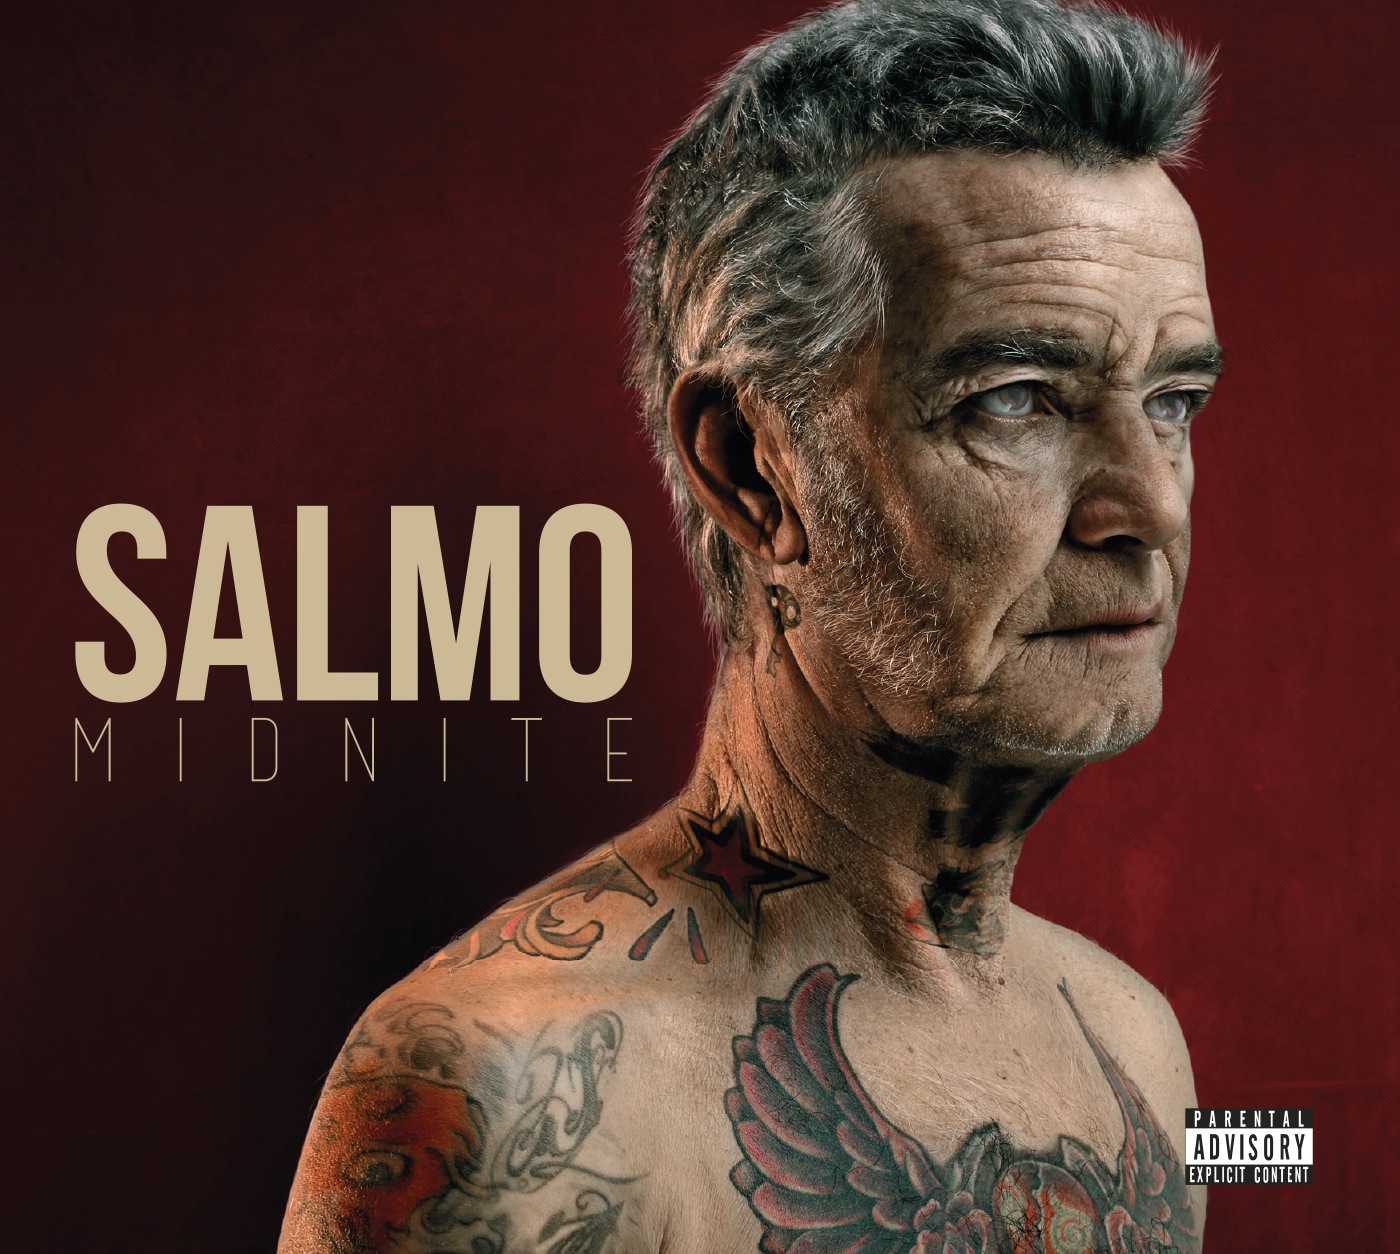 salmo_midnite_cover